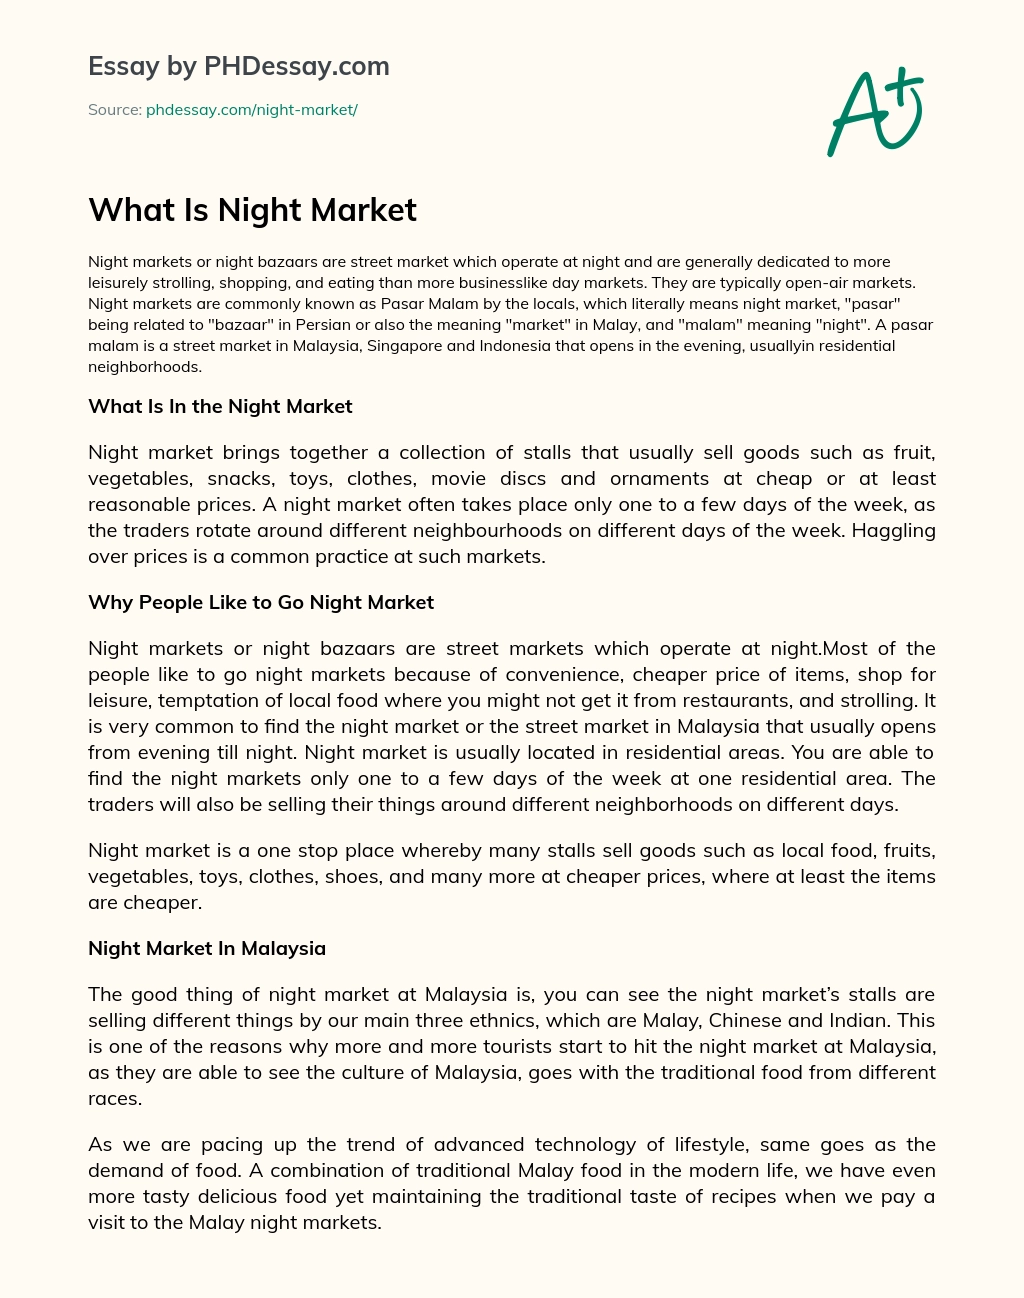 night market essay upsr